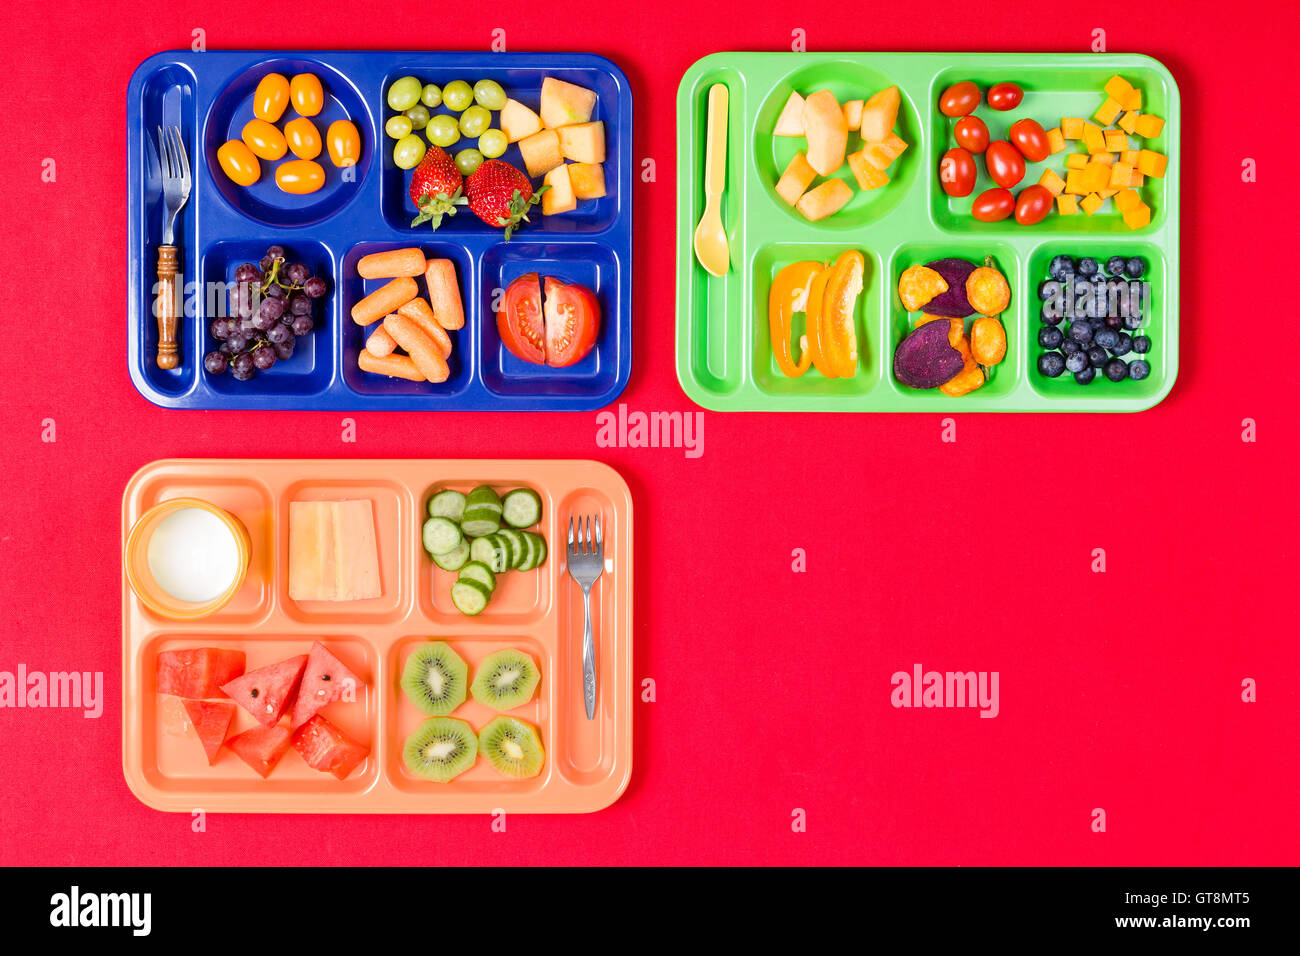 Trois enfants colorés en plastique rempli de plateaux repas tomates, raisins, melon d'eau et d'autres produits sur fond rouge avec l'exemplaire Banque D'Images